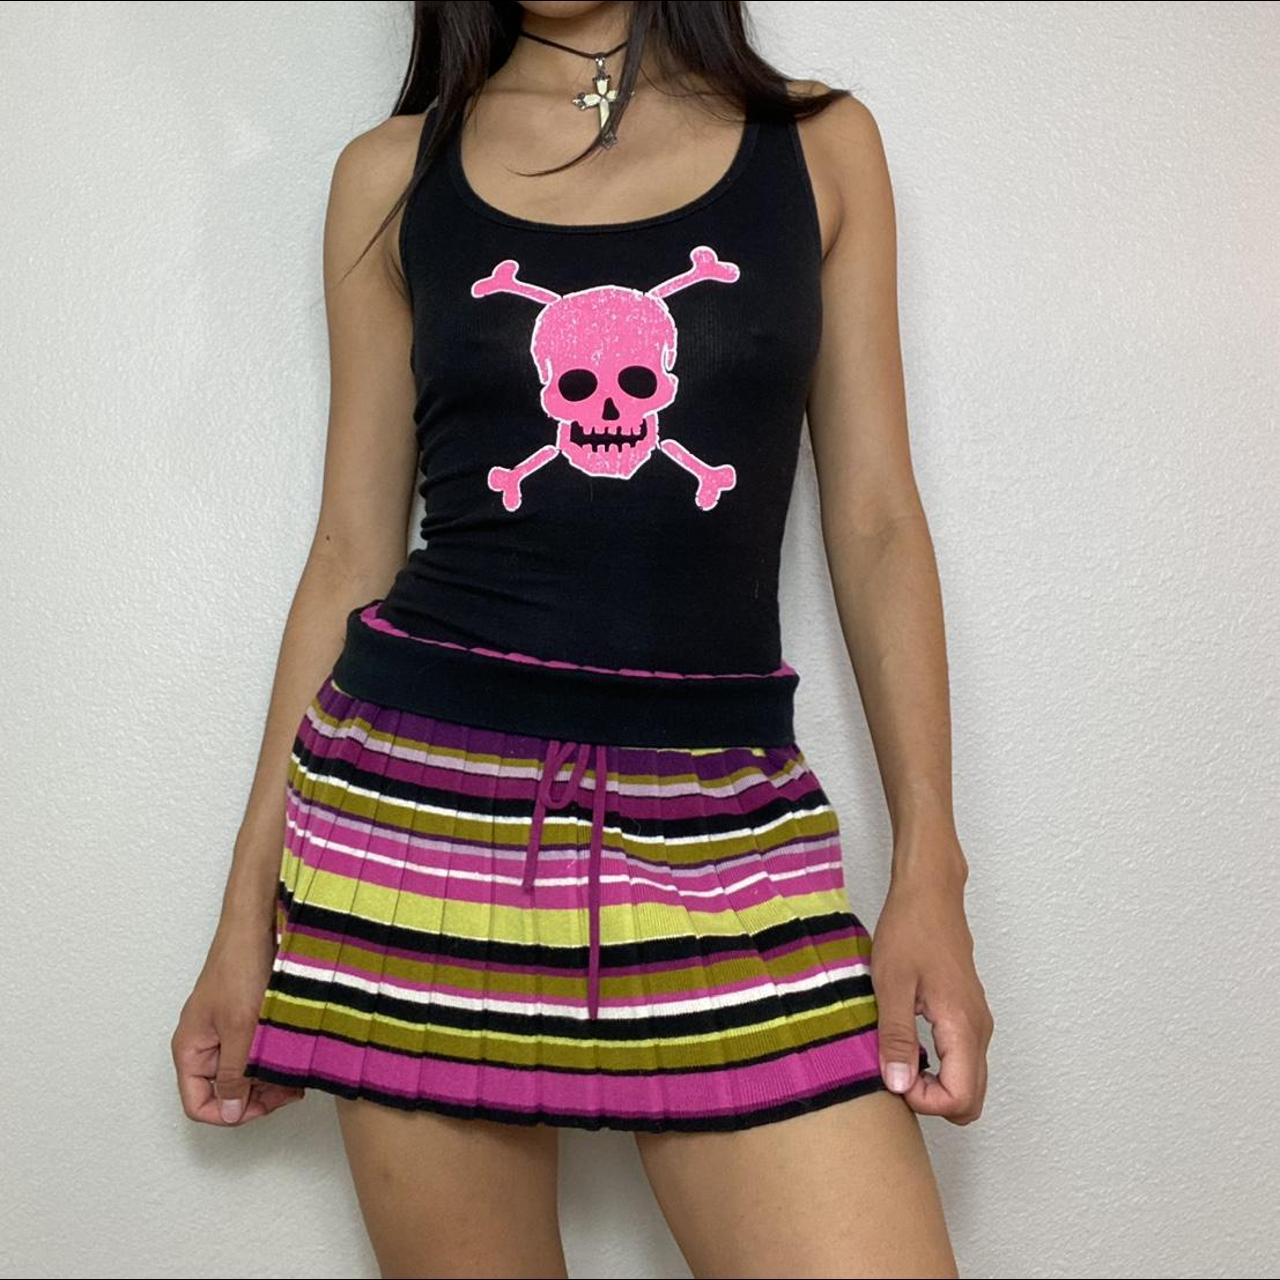 Missoni Women's Multi Skirt (2)